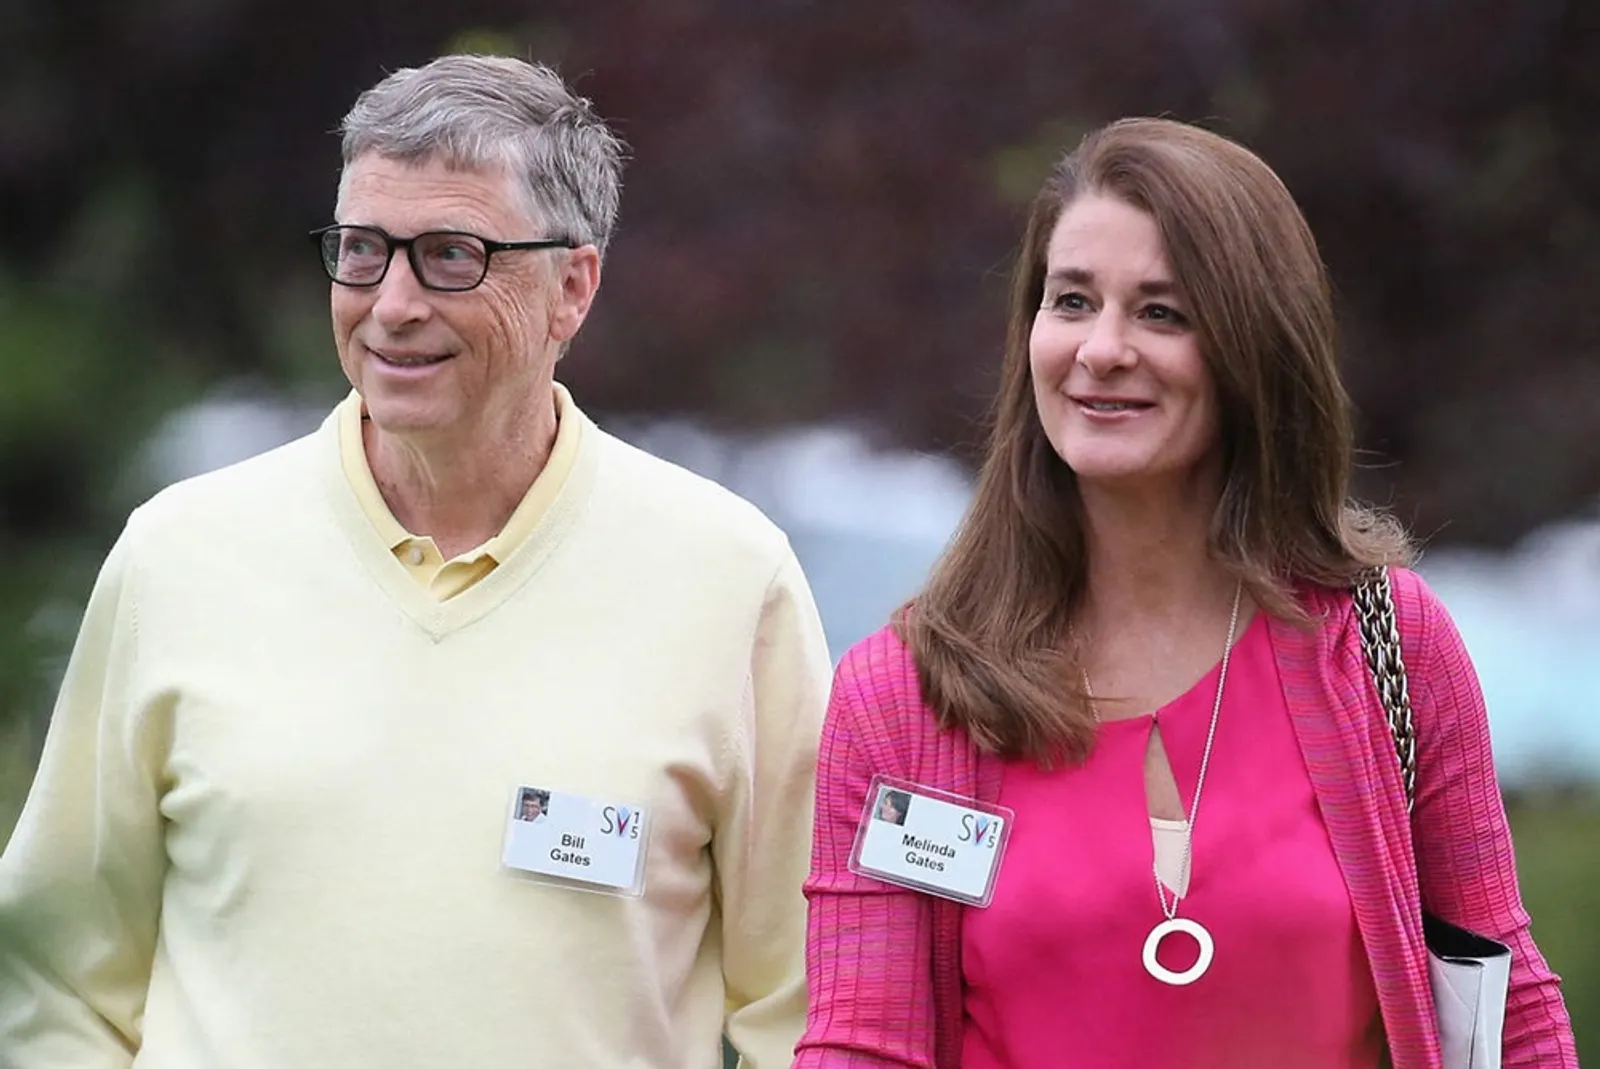 Terbongkar! Ini 5 Fakta Perselingkuhan Bill Gates Sebelum Bercerai